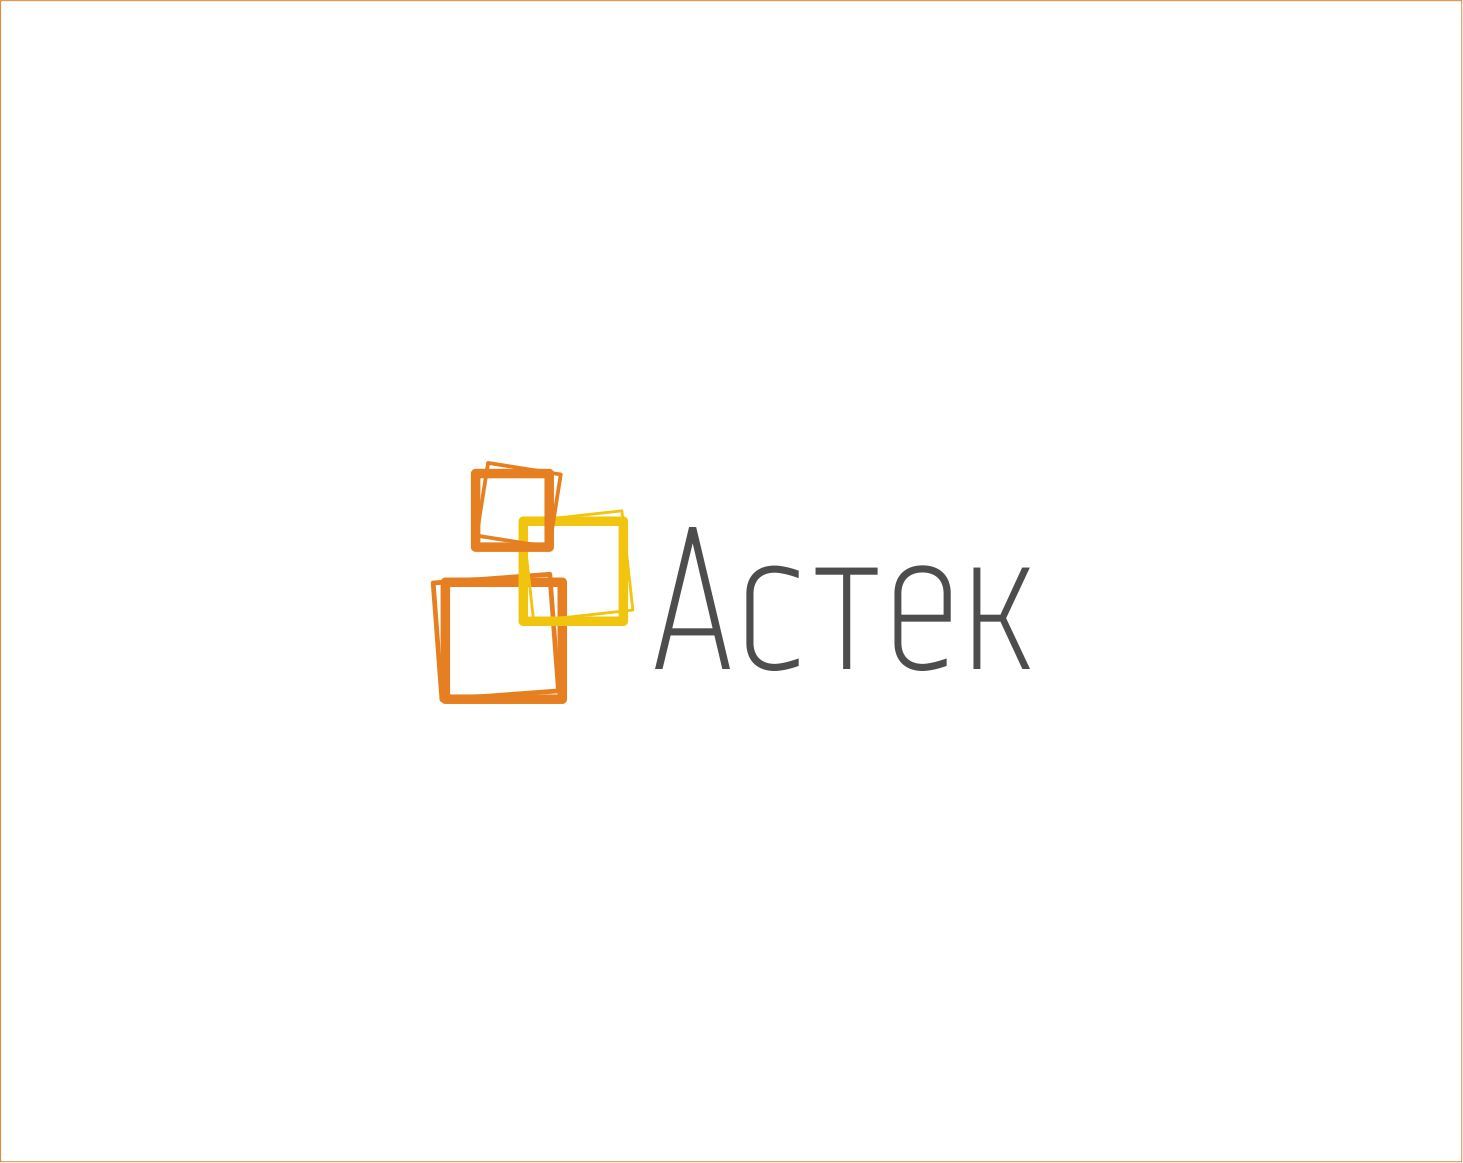 Логотип для Астек - дизайнер georgian